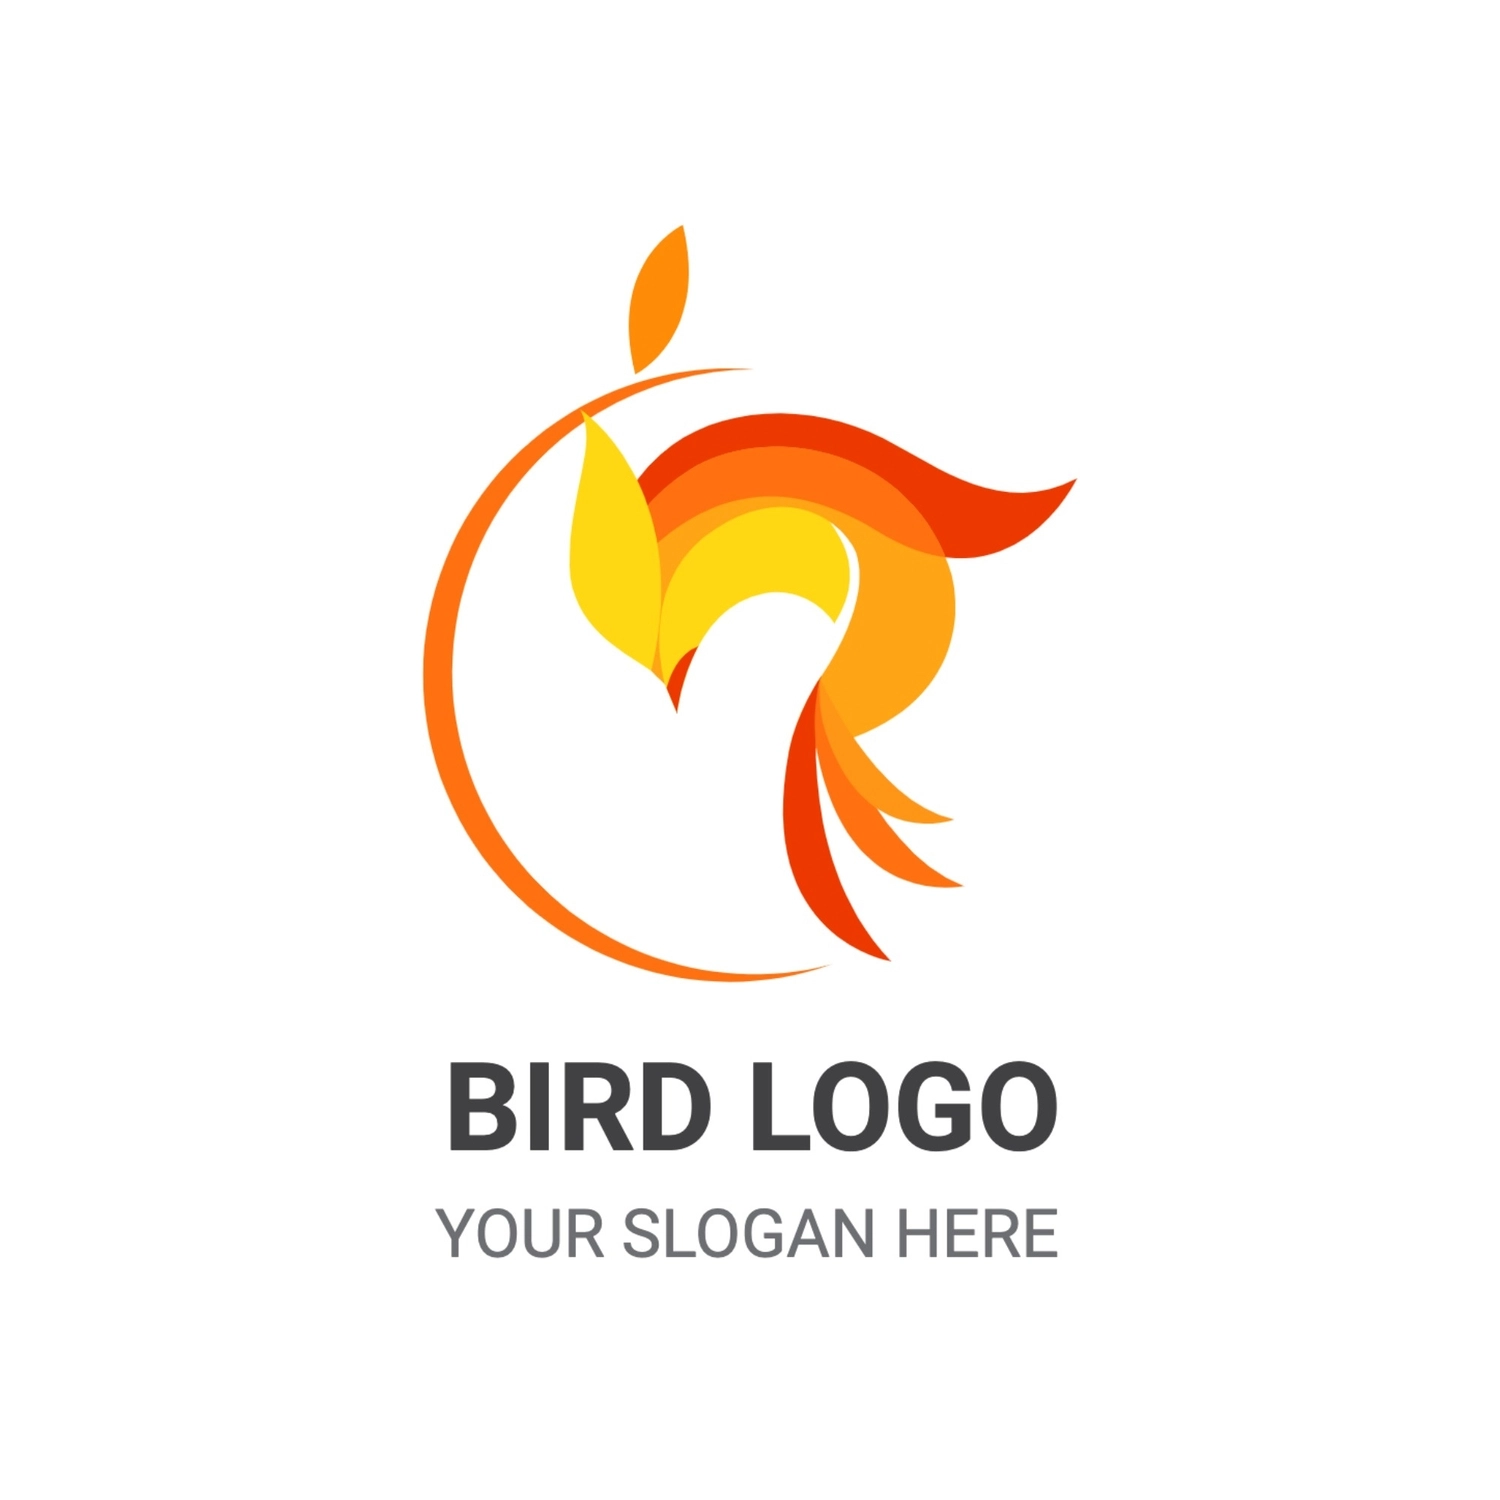 オレンジの鳥のロゴ, 일러스트, 만들기, 디자인, 심벌 마크 템플릿